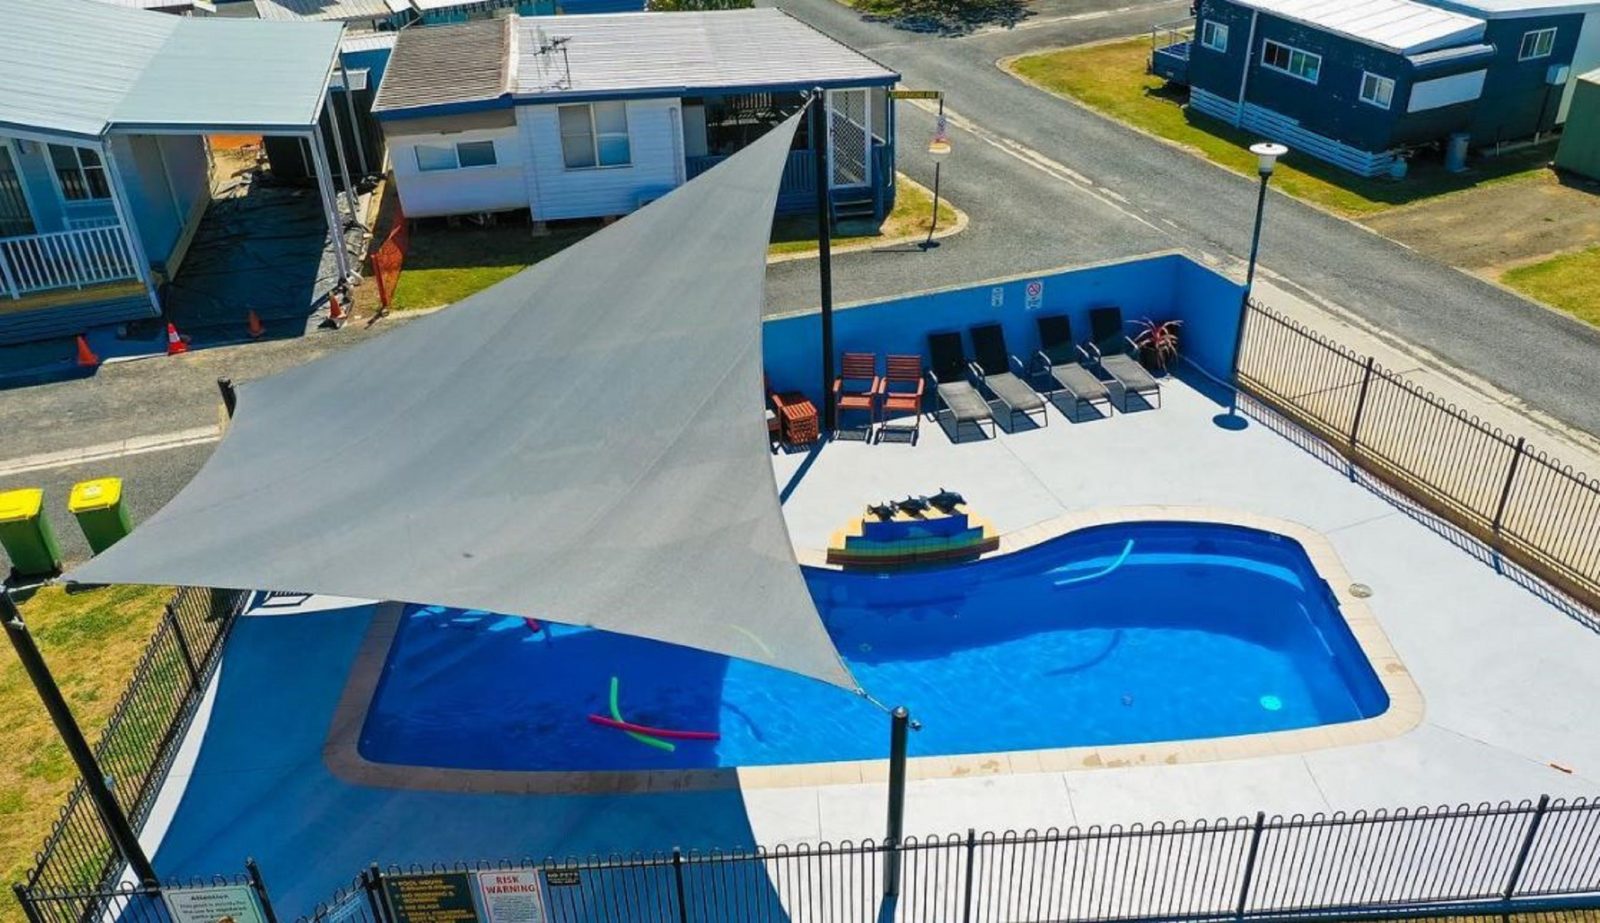 Onsite pool at this resort